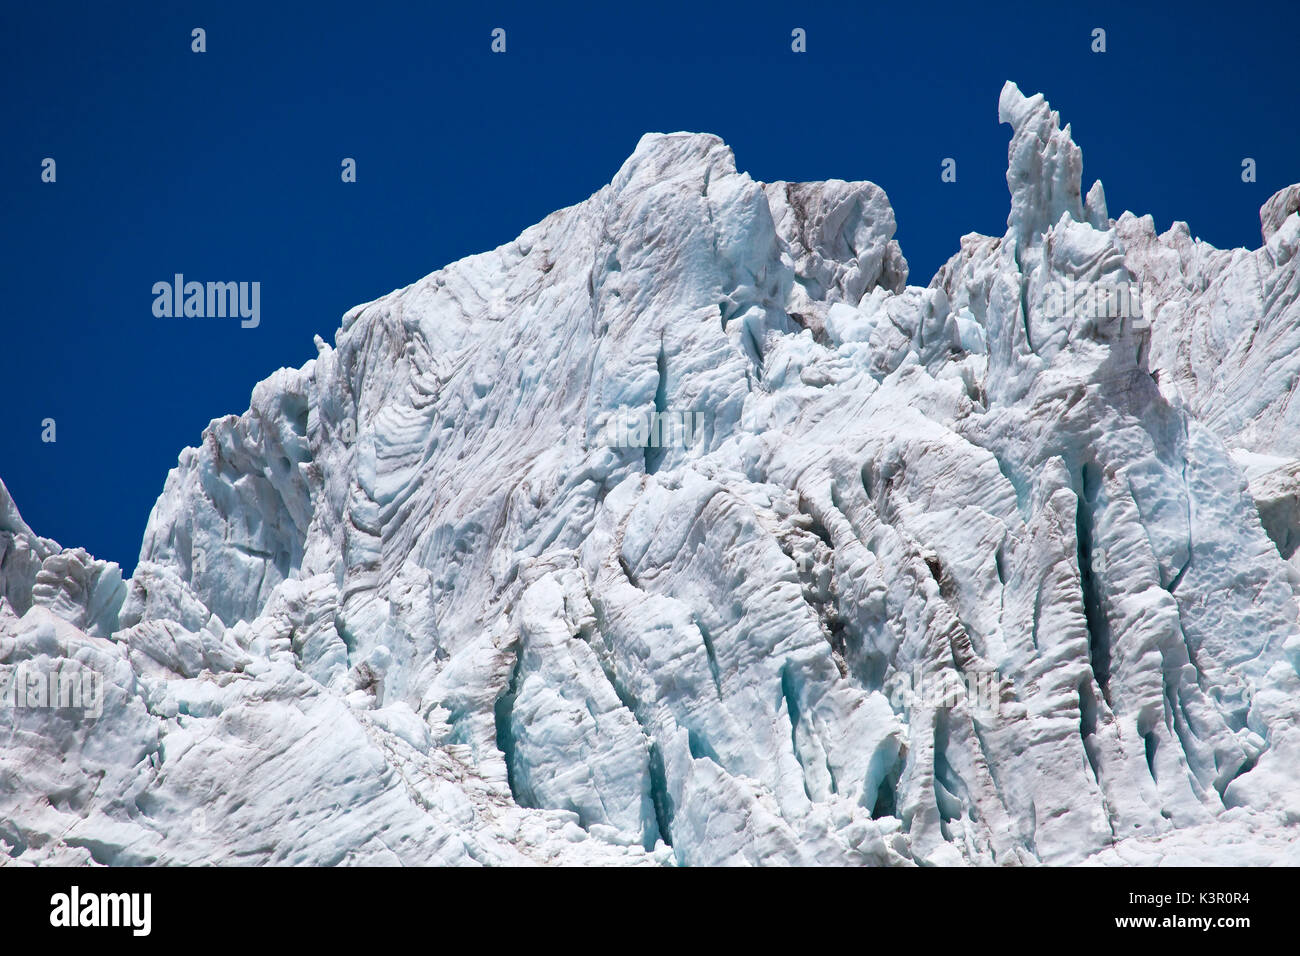 Eine Reihe von seracs des Glacier Fellaria, die zwar langsam zurückziehen, sind noch ehrfürchtig, Valmalenco, Valtellina, Lombardei Italien Europa Stockfoto